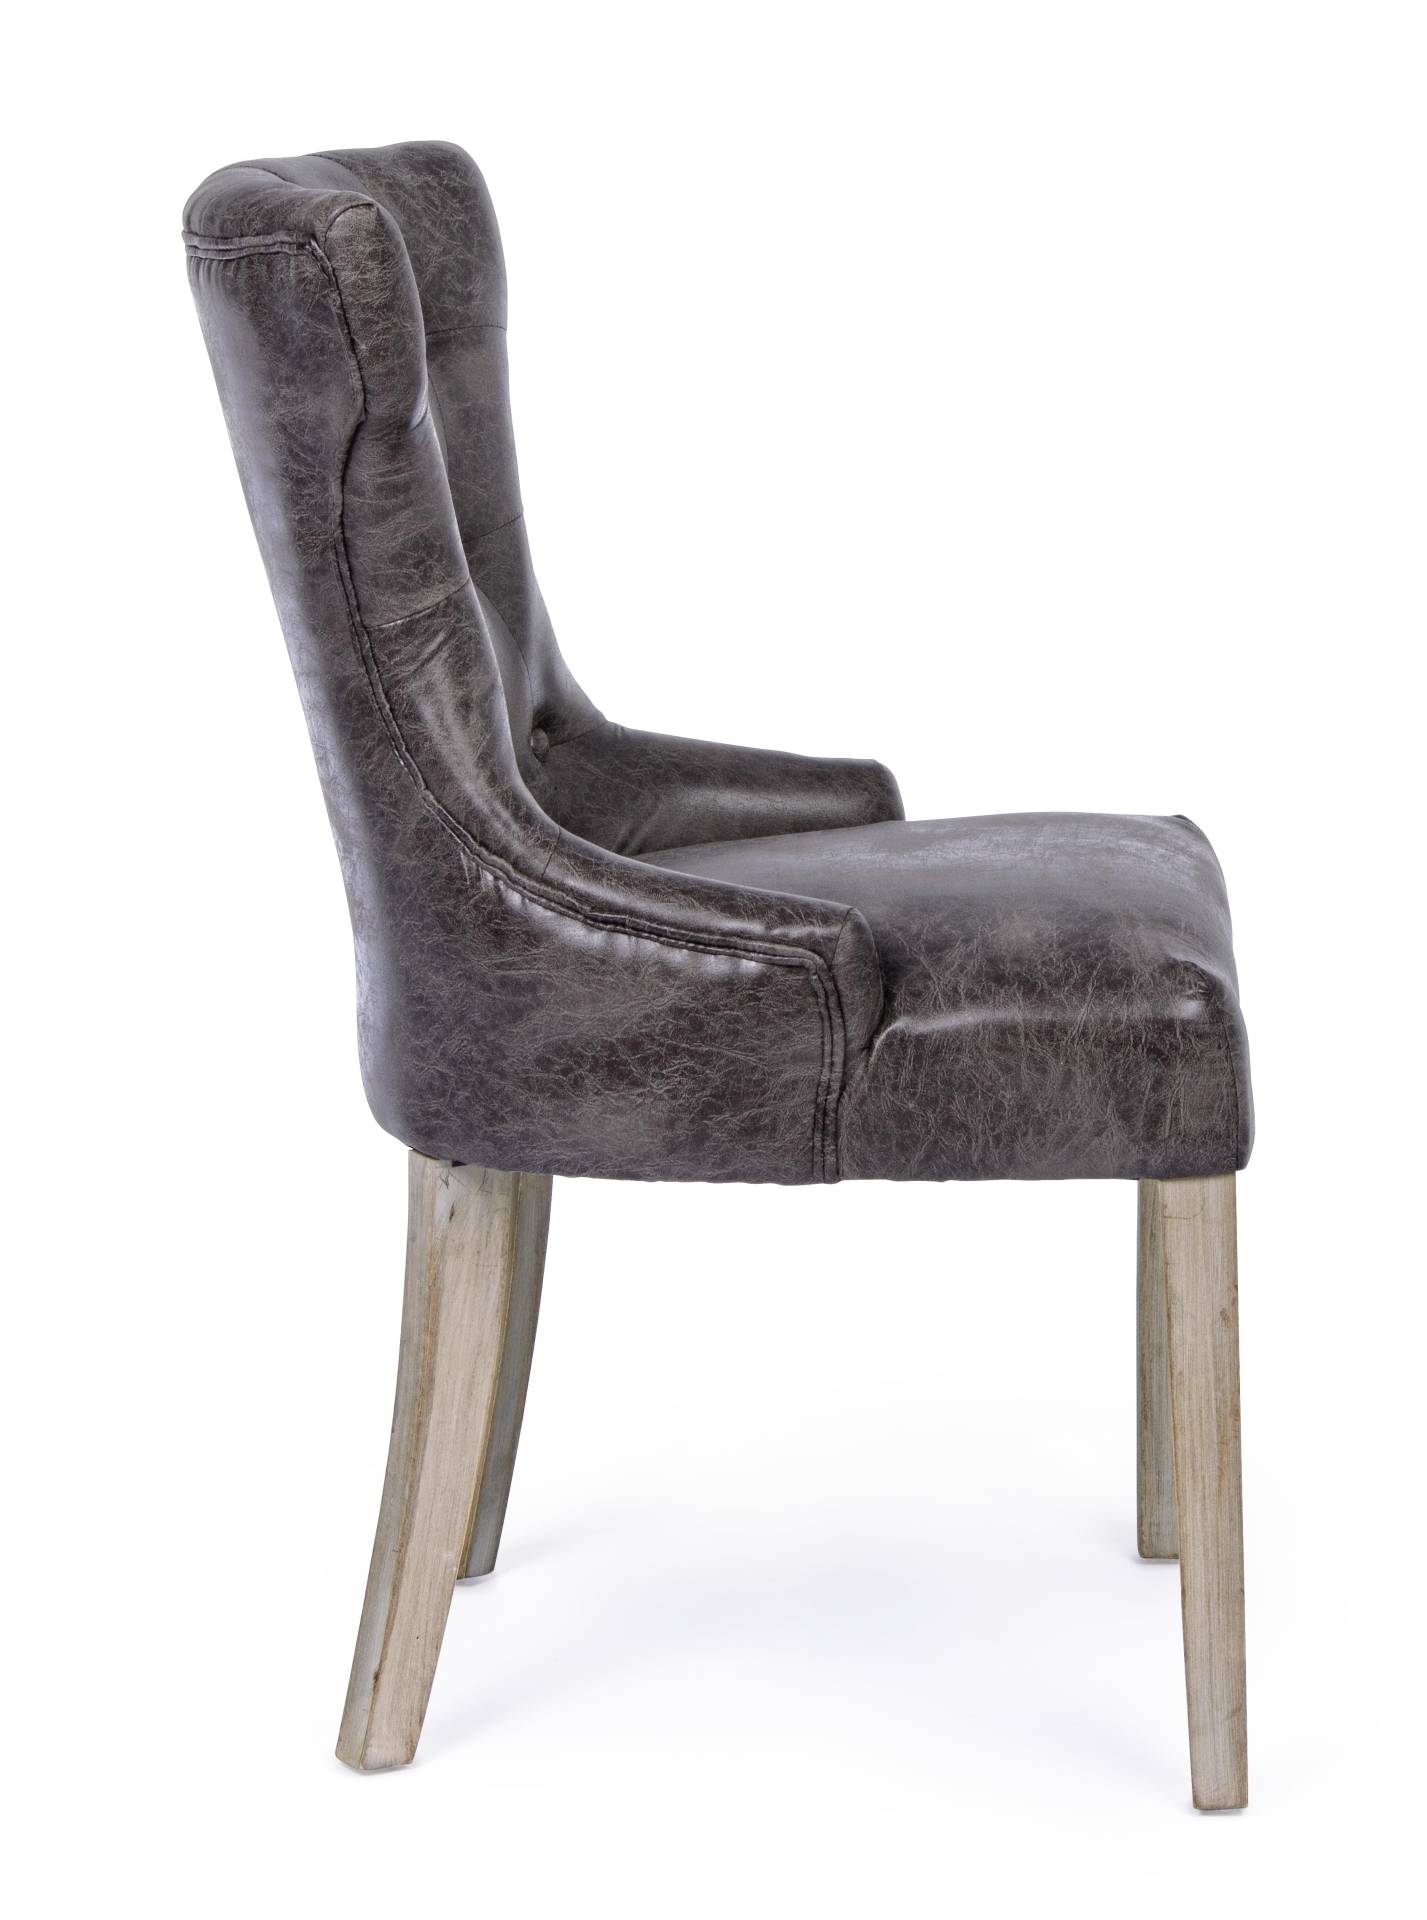 Der Esszimmerstuhl Azelia überzeugt mit seinem klassischem Design. Gefertigt wurde der Stuhl aus einem Kunststoff-Bezug, welcher einen braunen Farbton besitzt. Das Gestell ist aus Holz und ist natürlich gehalten. Die Sitzhöhe beträgt 51 cm.